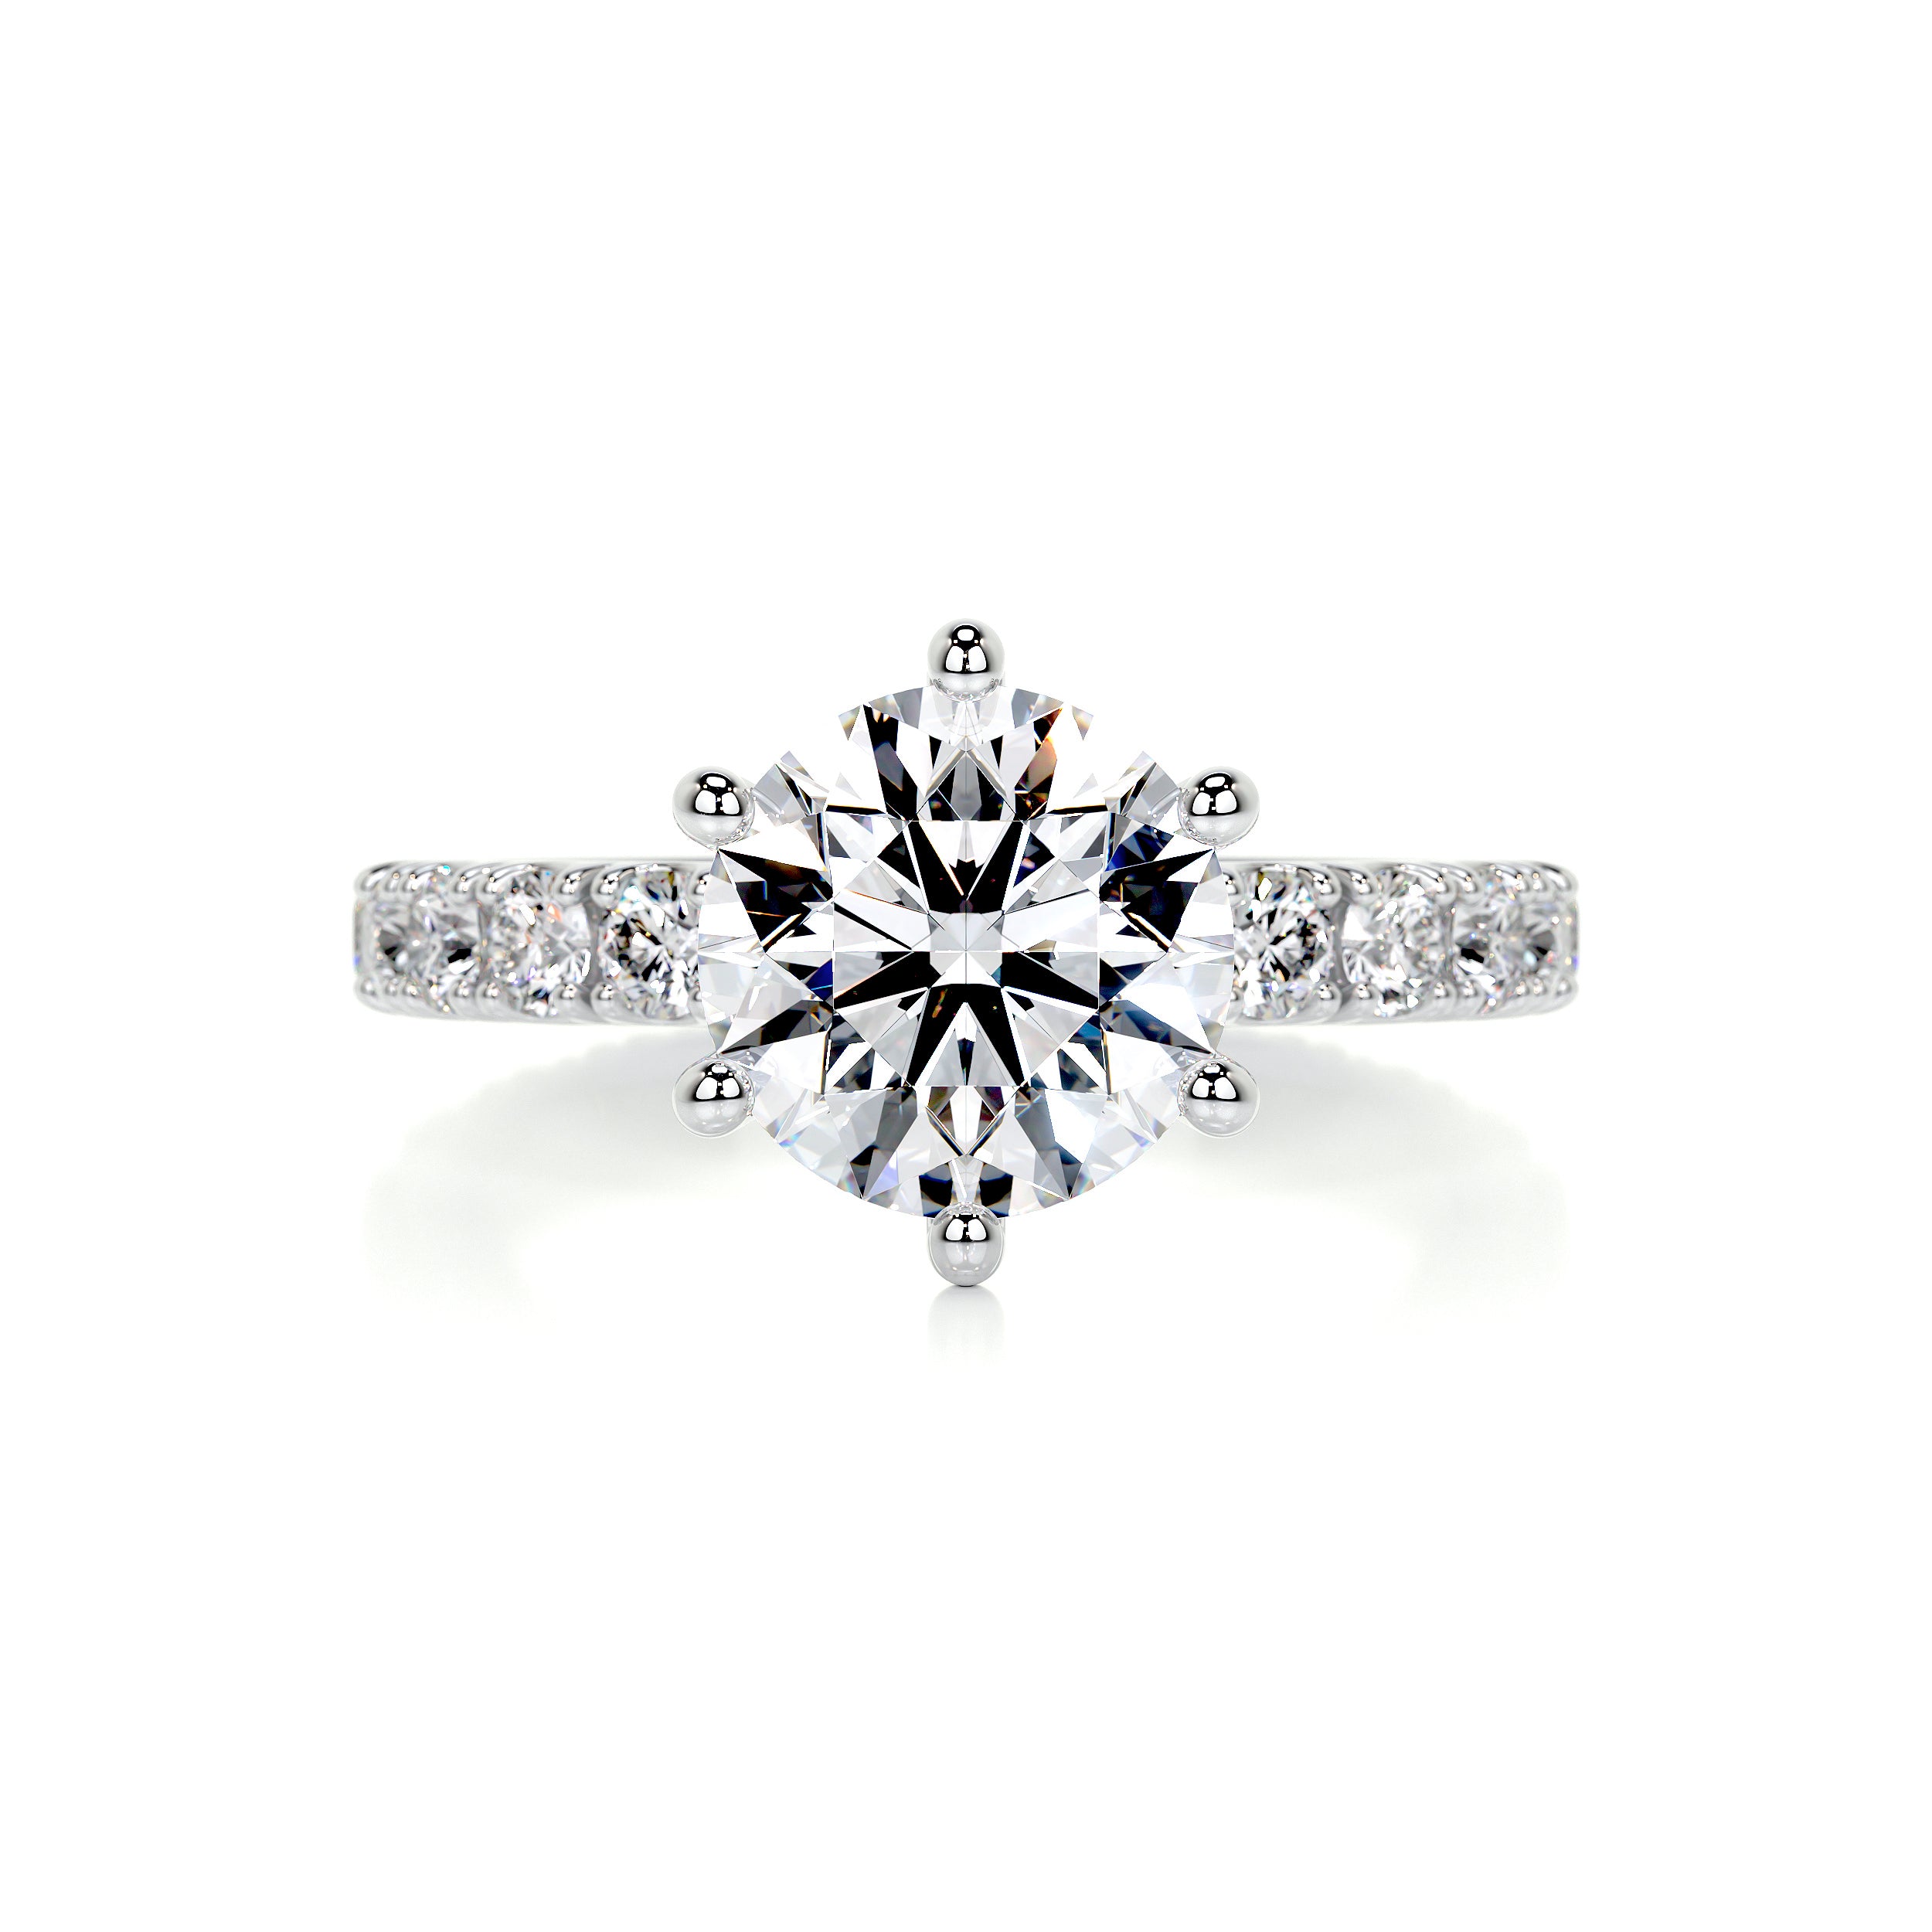 Jane Diamond Engagement Ring   (2.25 Carat) -14K White Gold